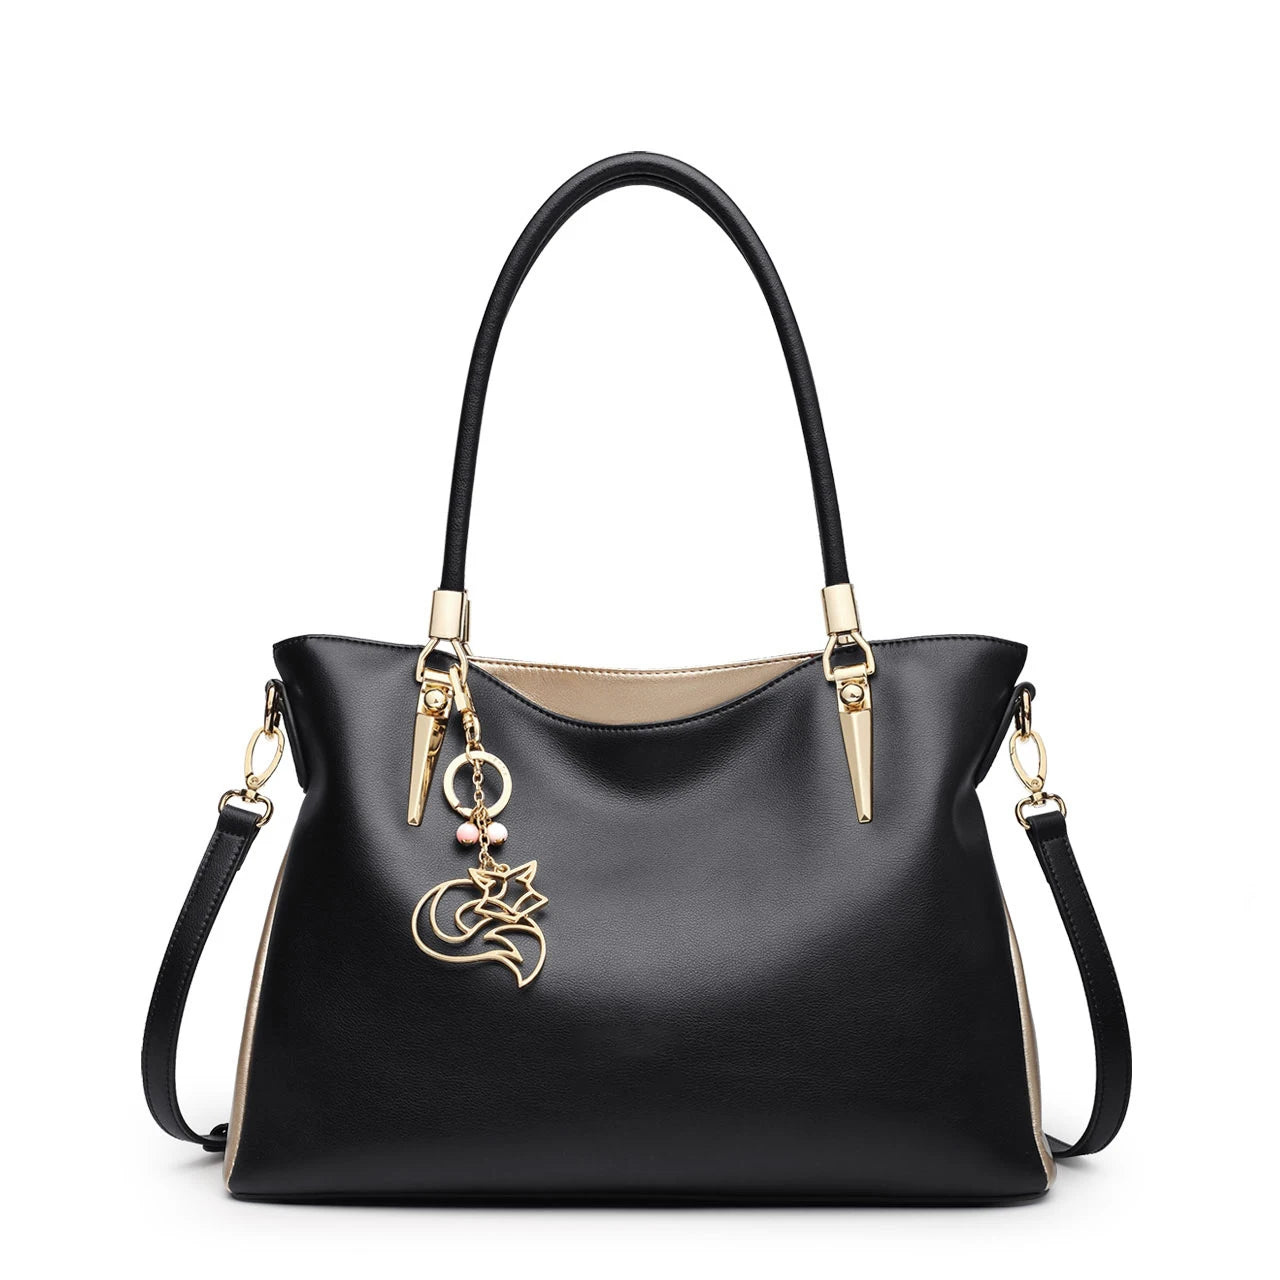 FOXER Brand Lady Cowhide Top Handle Bag Black